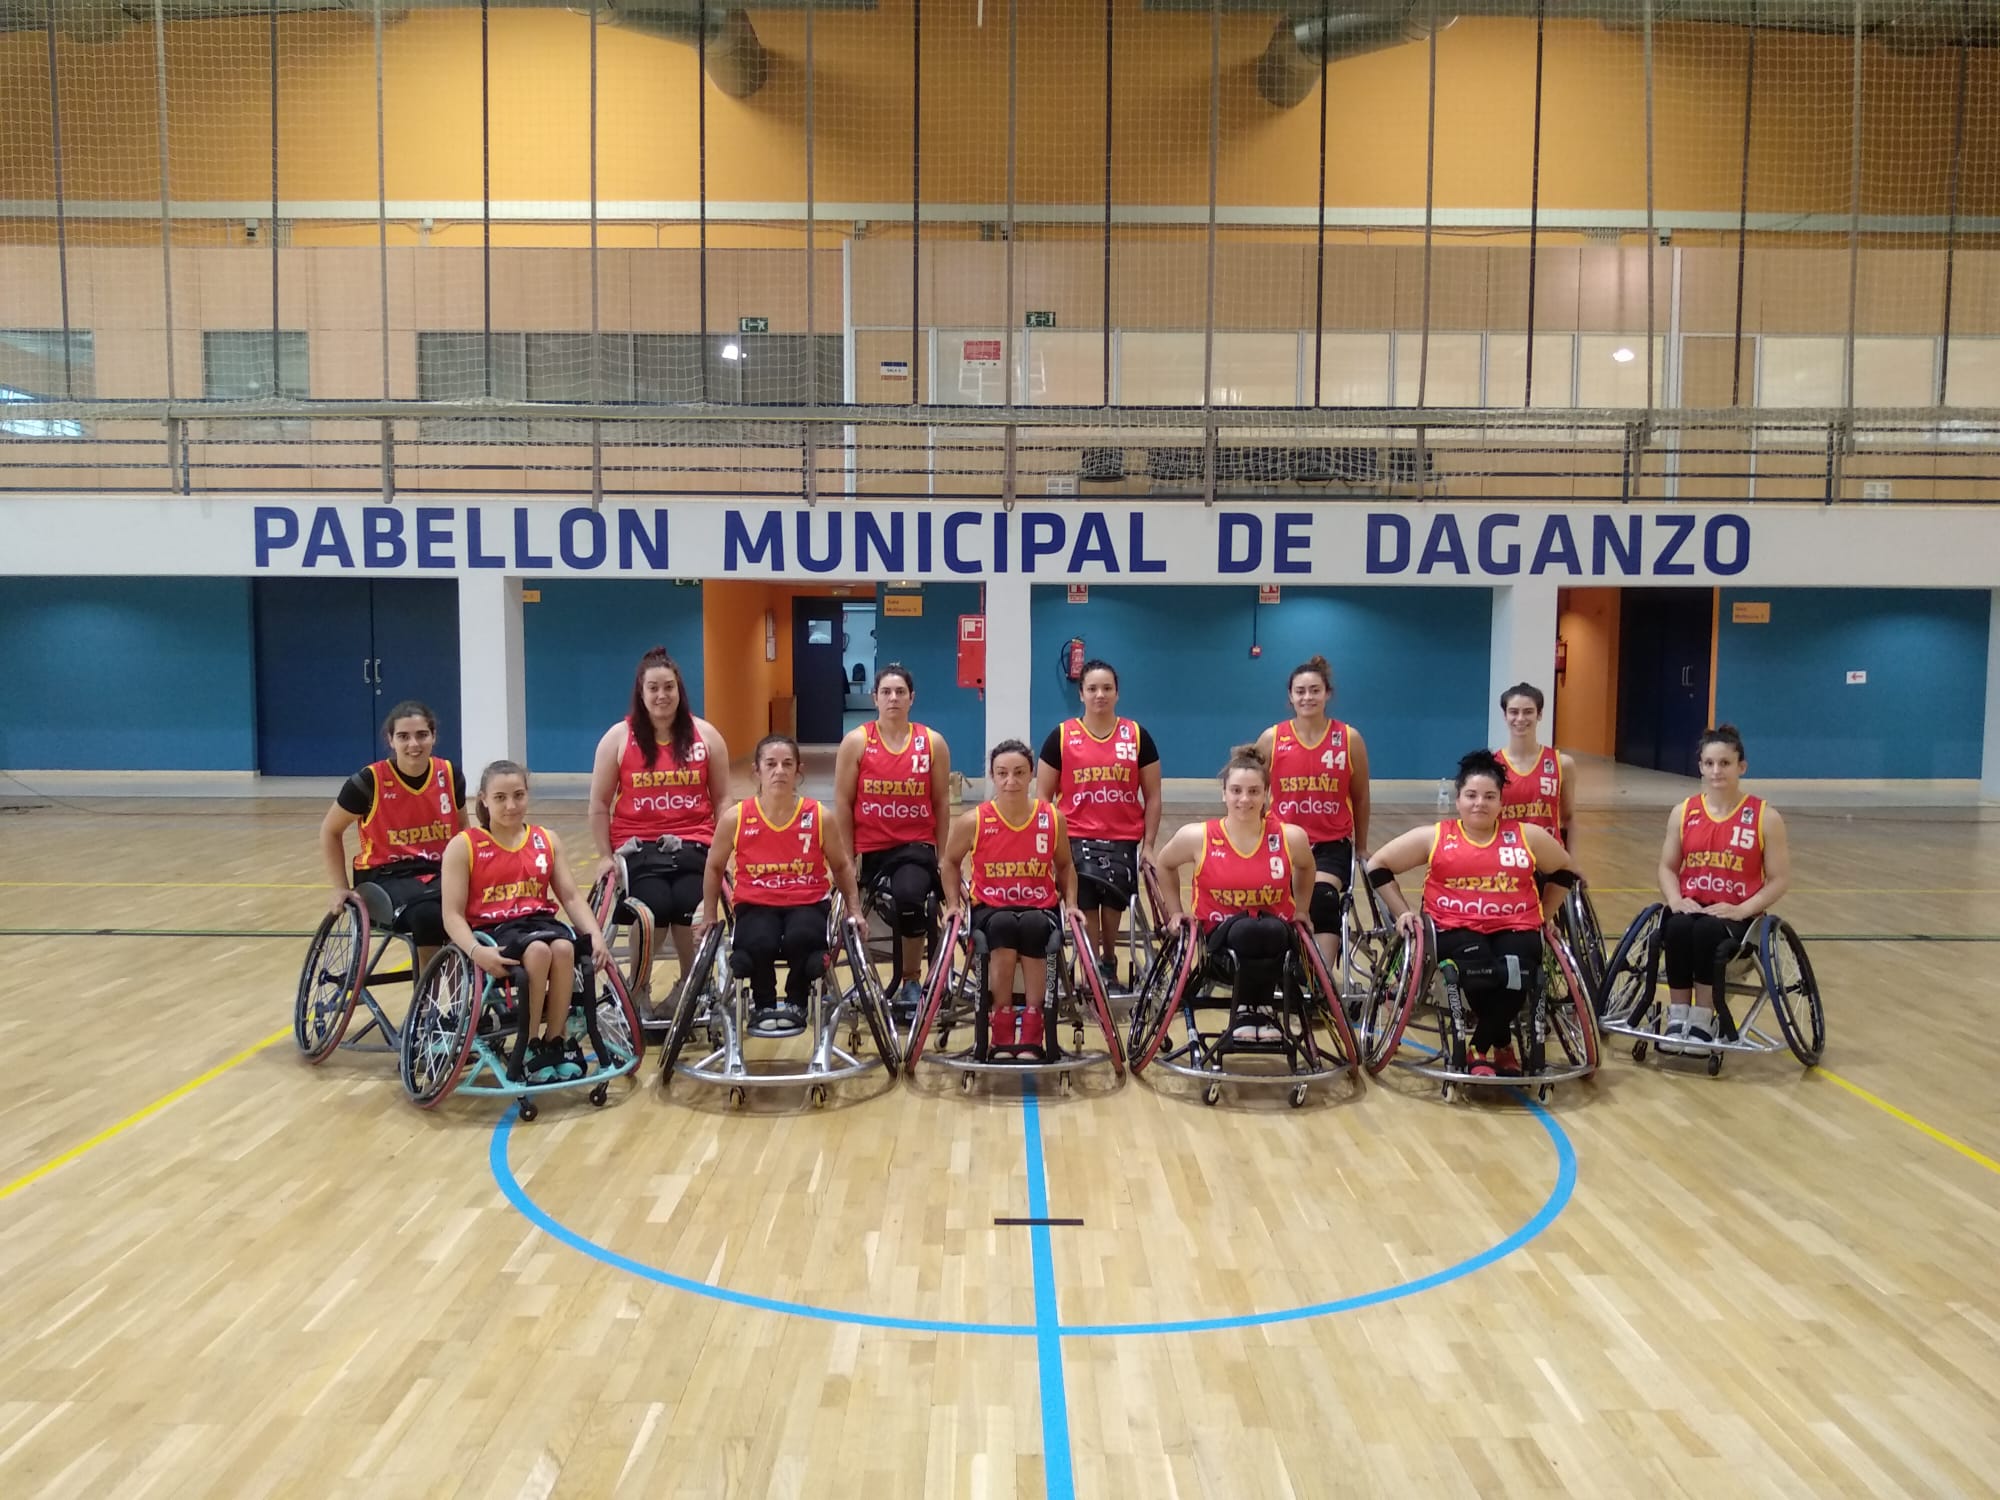 Presentada la lista 12 jugadoras de baloncesto en silla de ruedas para los Juegos de | Paralímpicos